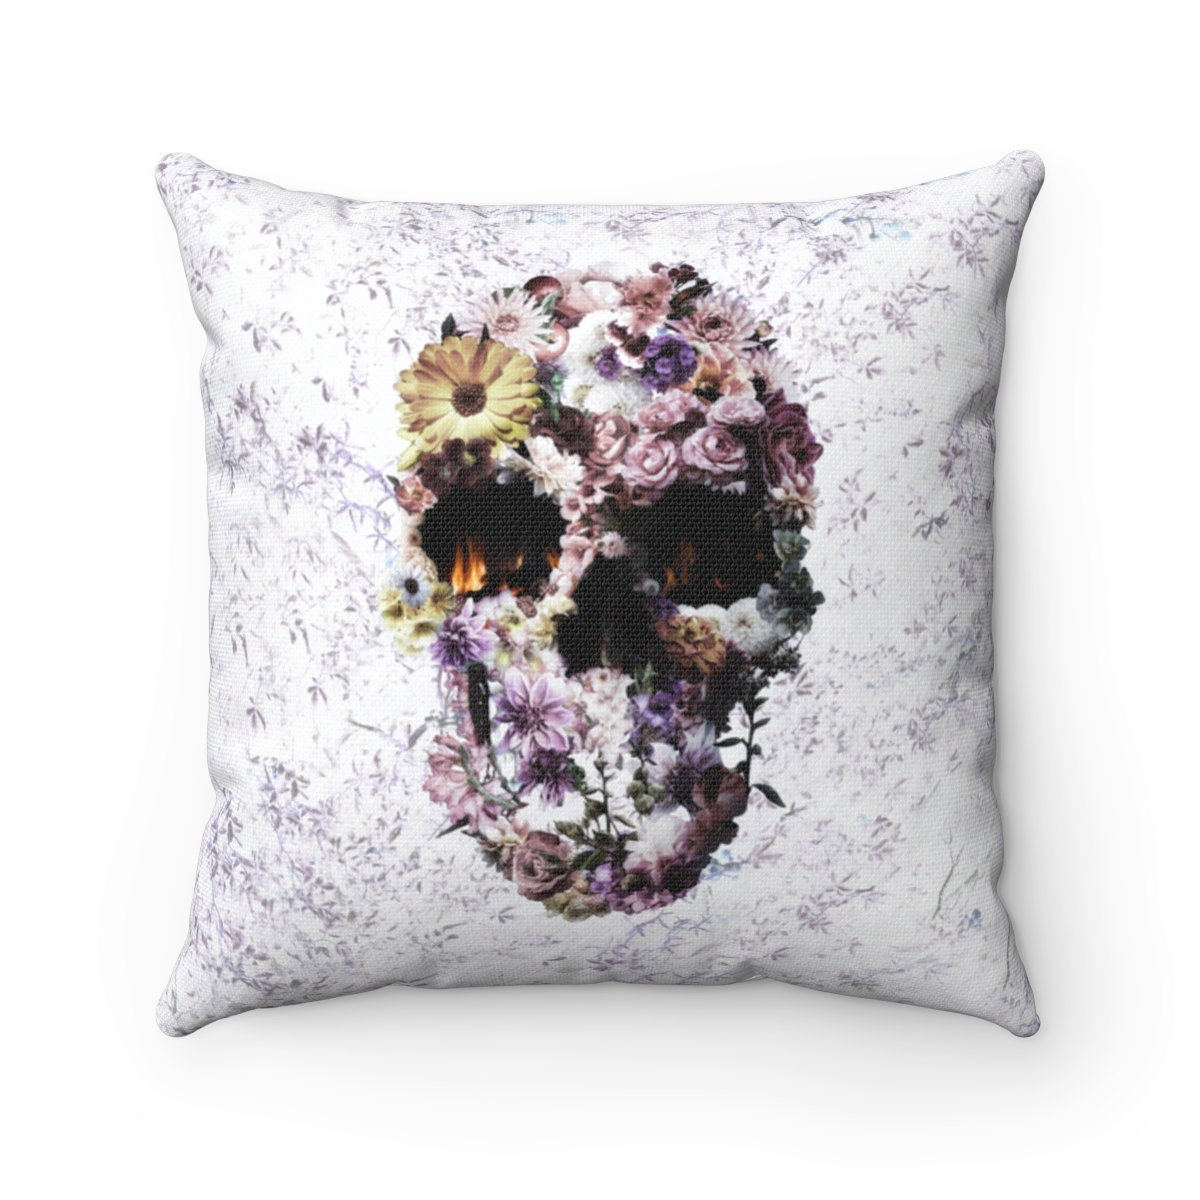 Gothic Skull Throw Pillow, Floral Skull Spun Polyester Square Pillow, Flower Sugar Art Skull Home Decor, Skull Print Pillow Decor Gift